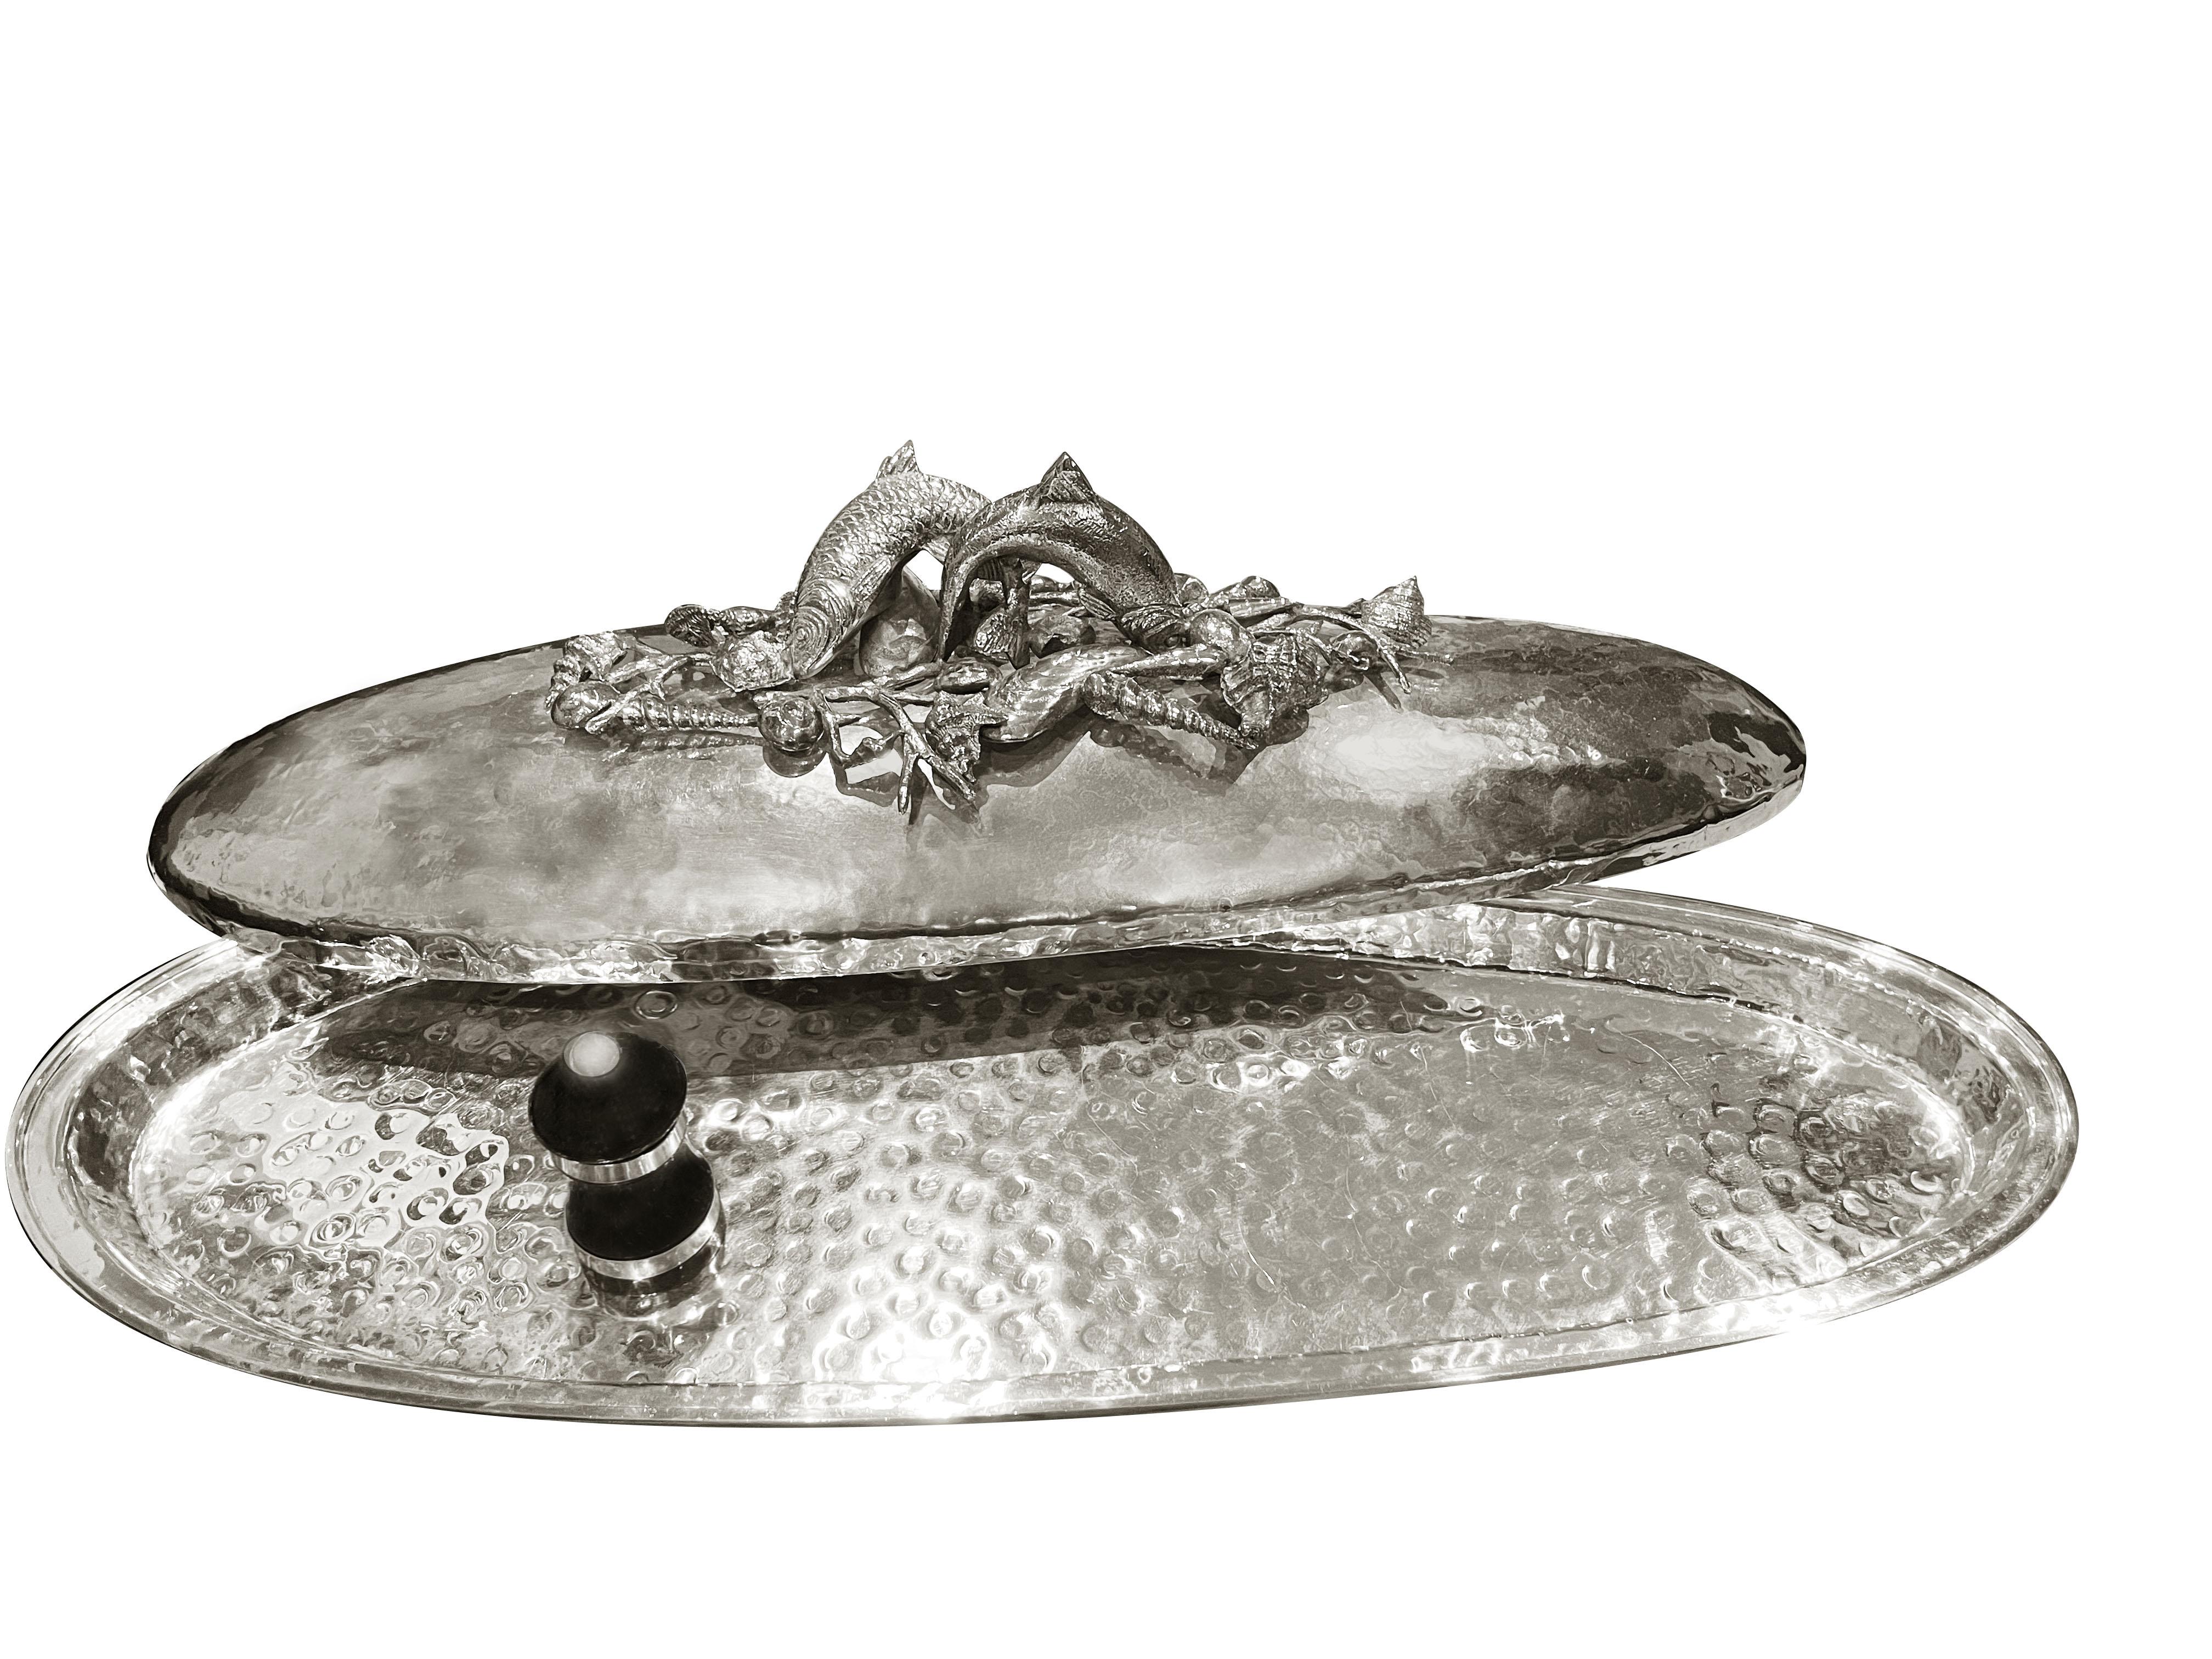 Wunderschöner versilberter, handgehämmerter Fischteller mit Dekorationen aus der Meereswelt: Fische, Seesterne, Seepferdchen und Muscheln zieren den Deckel und werden Ihre Tische verschönern.
Das Franco Lapini zugeschriebene Werk ist auf diese Art